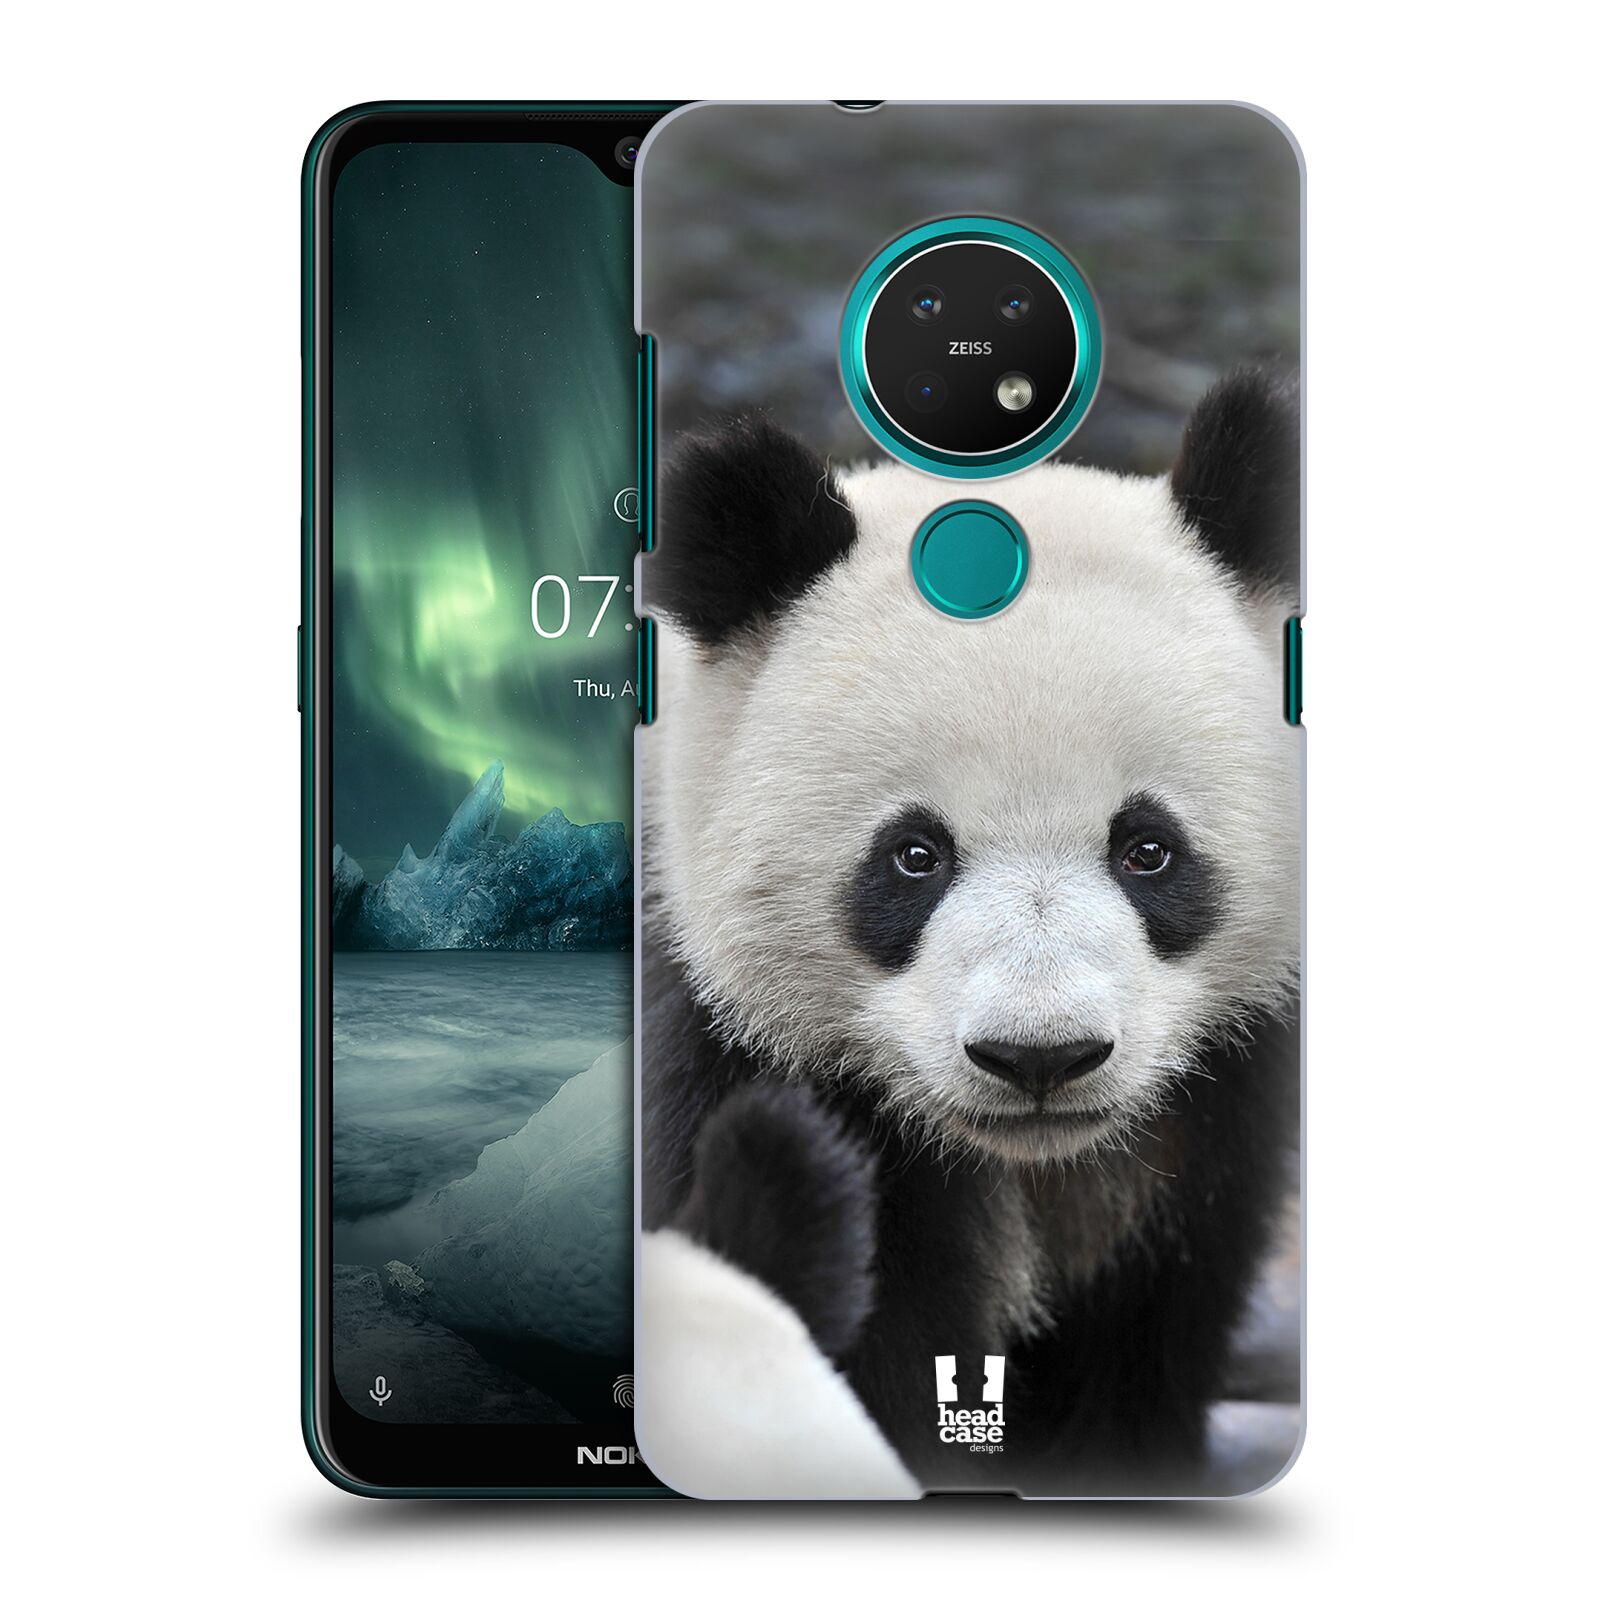 Pouzdro na mobil NOKIA 7.2 - HEAD CASE - vzor Divočina, Divoký život a zvířata foto MEDVĚD PANDA